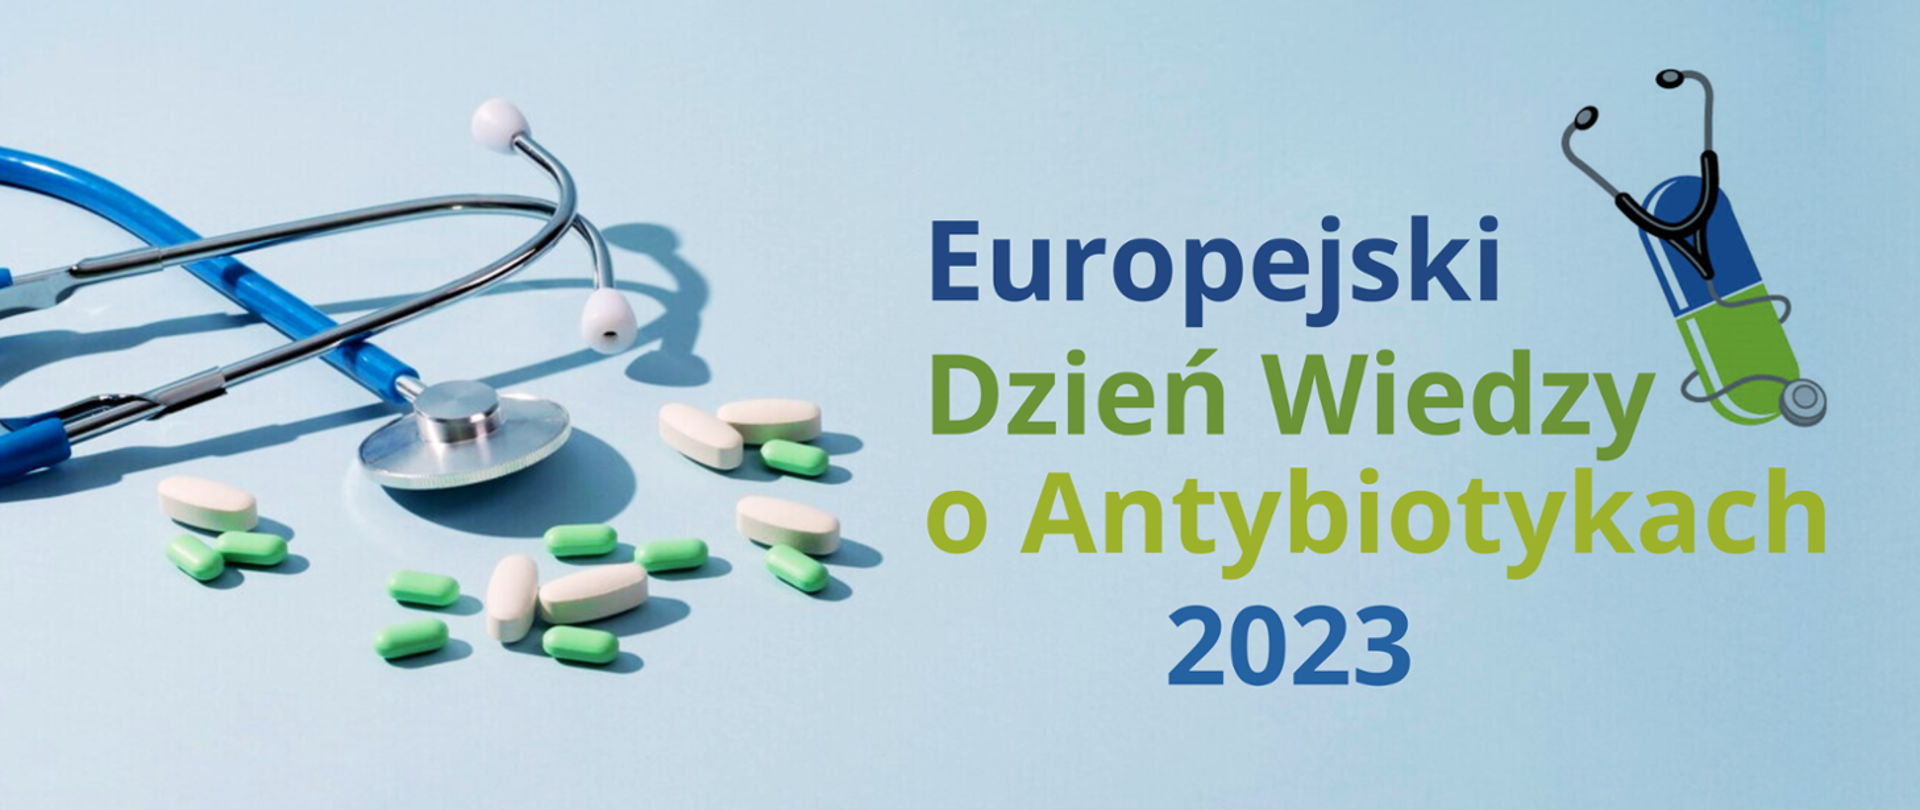 Europejski Dzień Wiedzy o Antybiotykach i Światowy Tydzień Wiedzy o Antybiotykach 